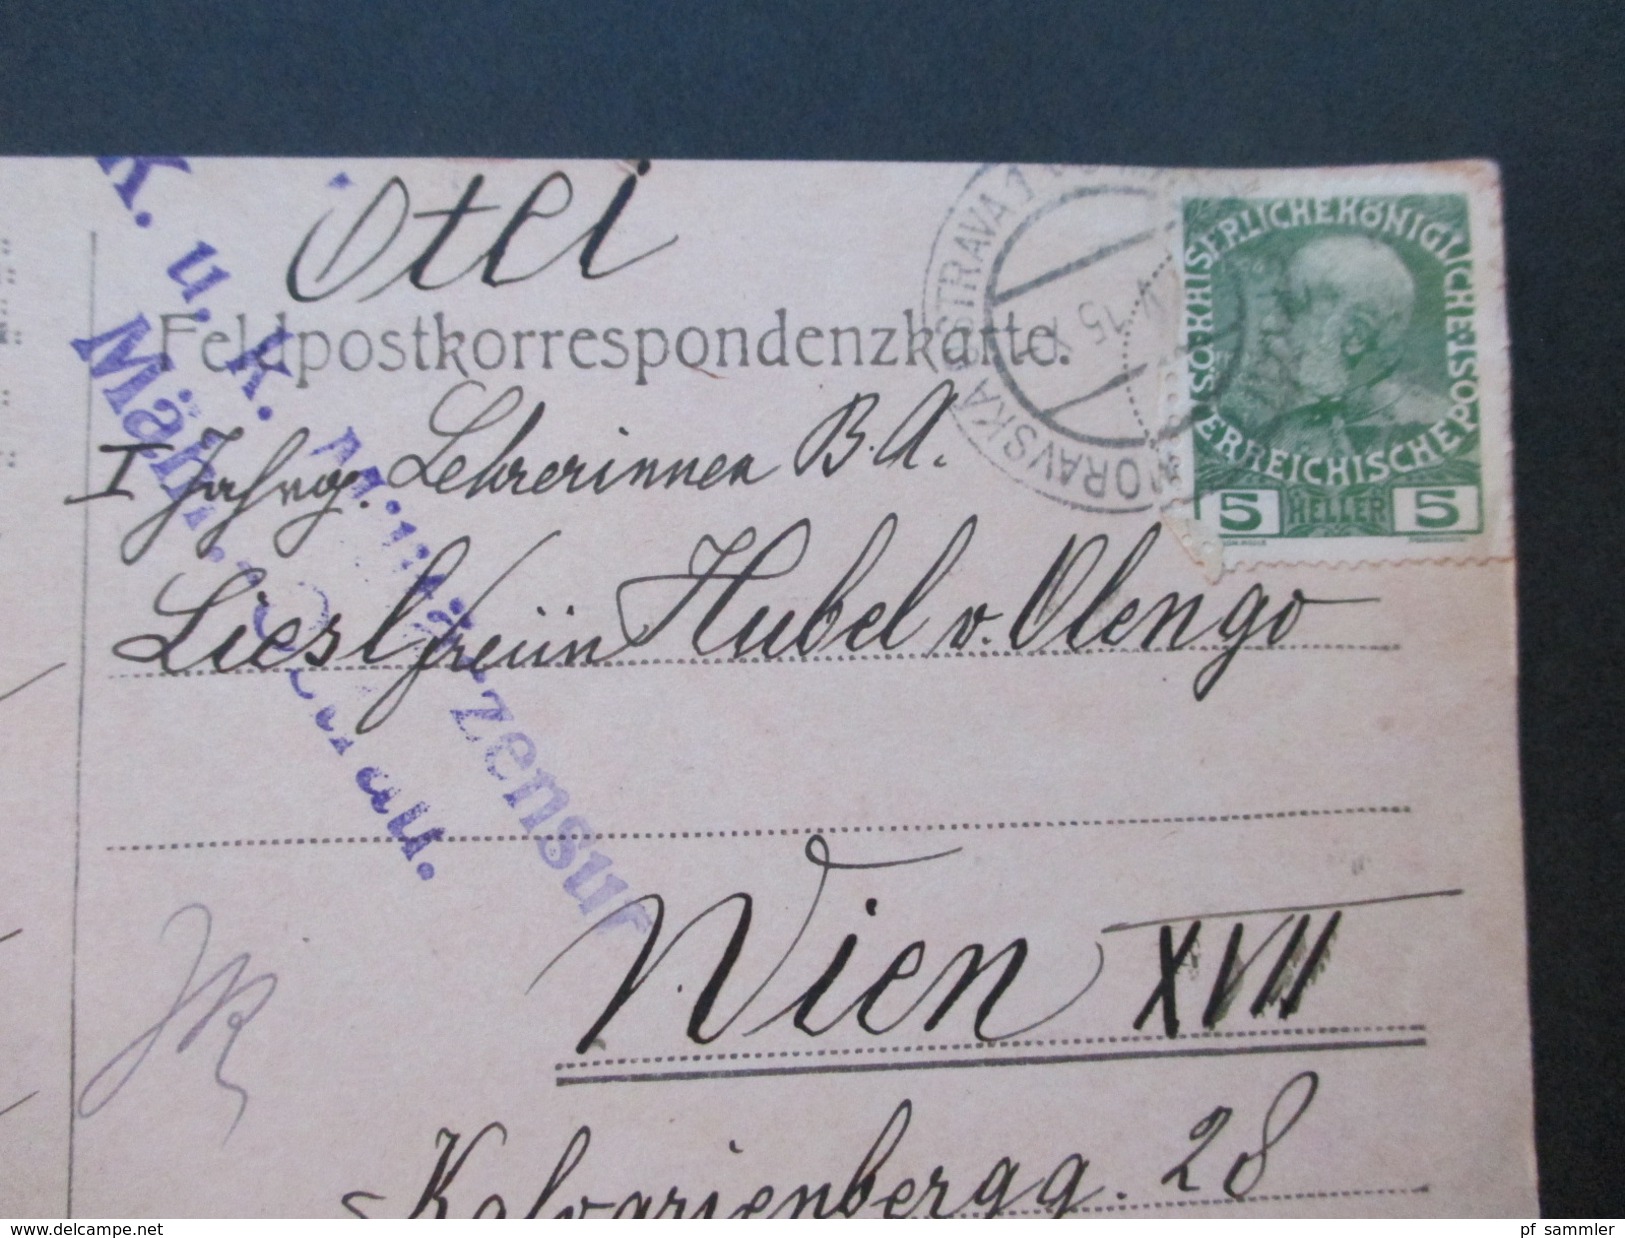 Österreich 1914/15 Felpost Korrespondenz Major Hubel von Olengo. Mährisch Ostrau / Krakau. Baronesse / K.u.K. Offizier